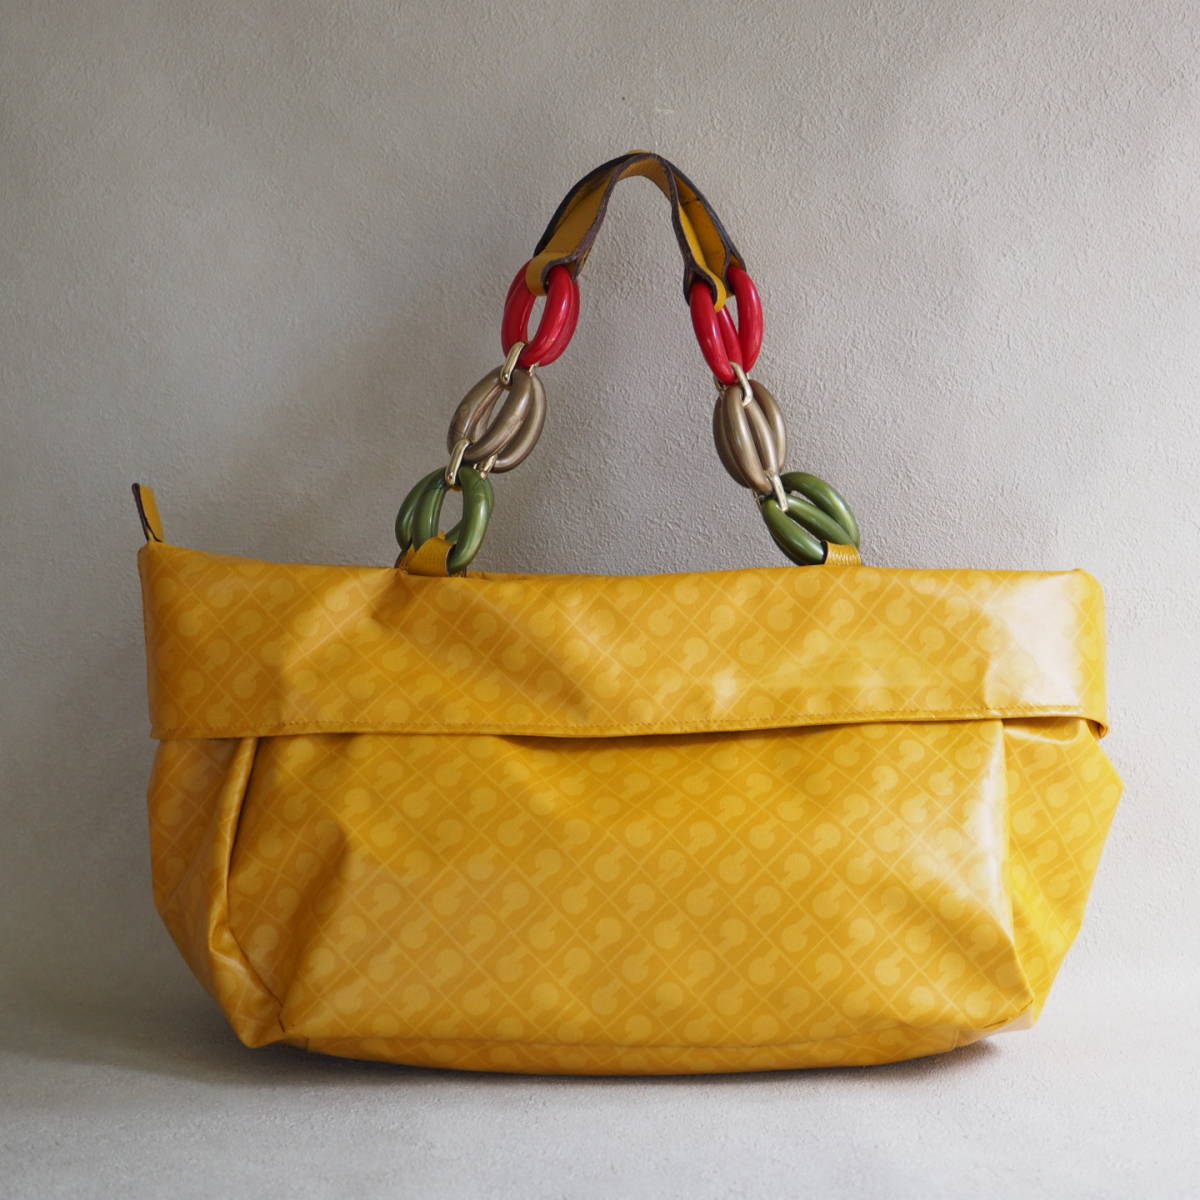  Gherardini GHERARDINI G любитель цепь большая сумка one сумка на плечо желтый общий рисунок Logo / бренд женский 